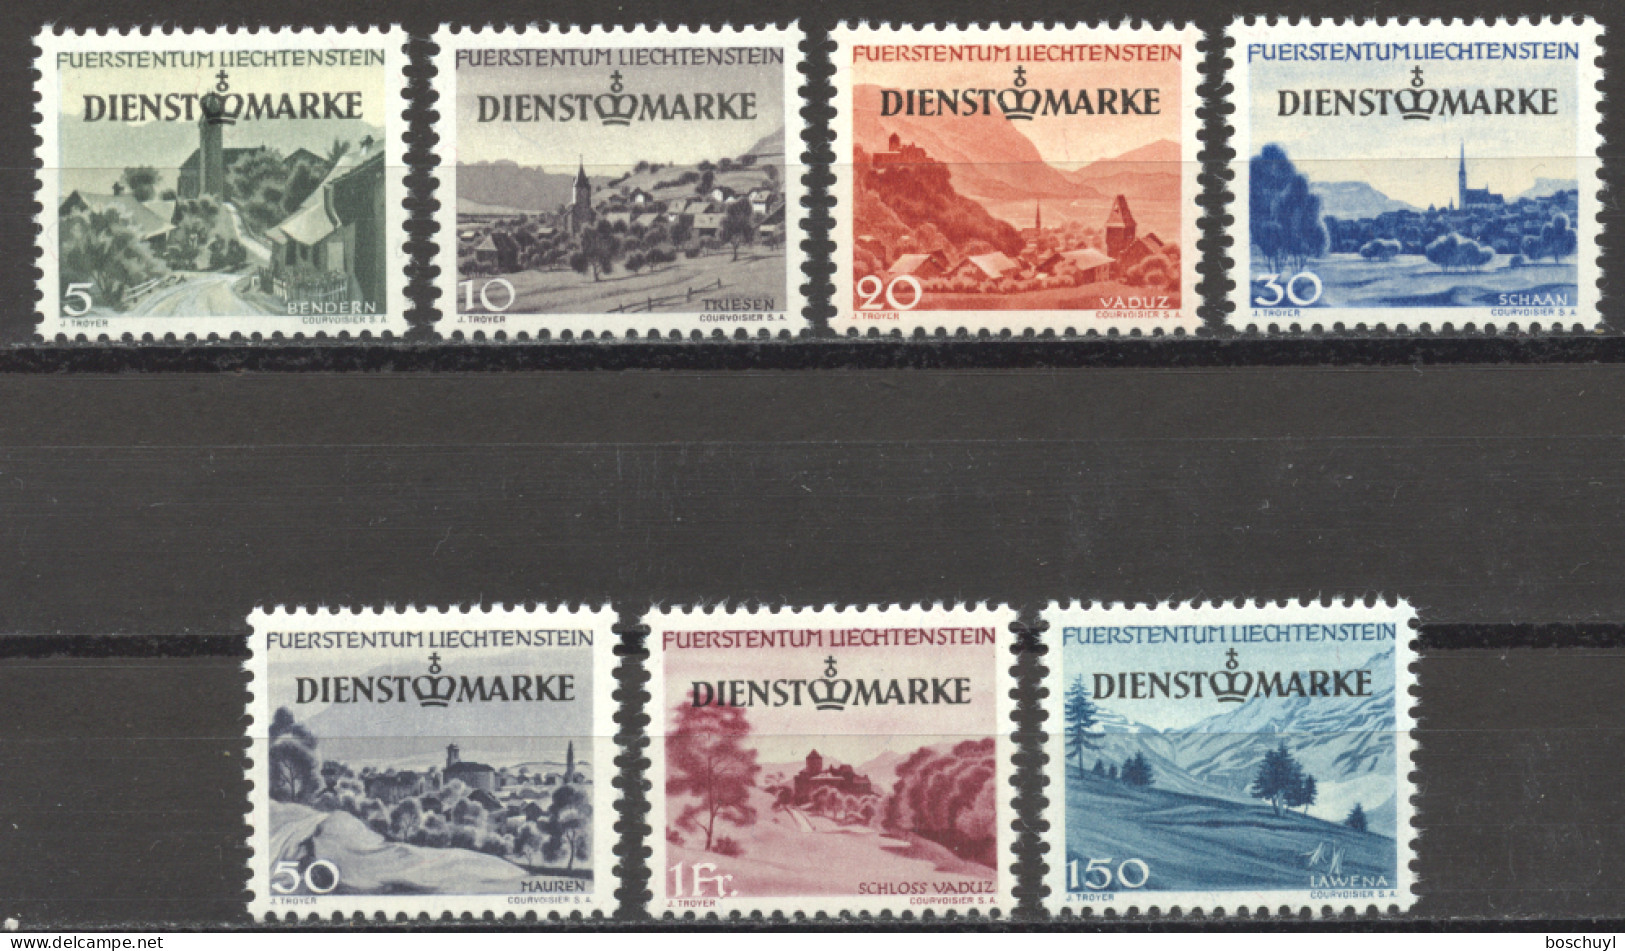 Liechtenstein, 1947, Service Stamps, Landscapes, Scenery, Overprinted, MNH, Michel 28-34 - Ungebraucht